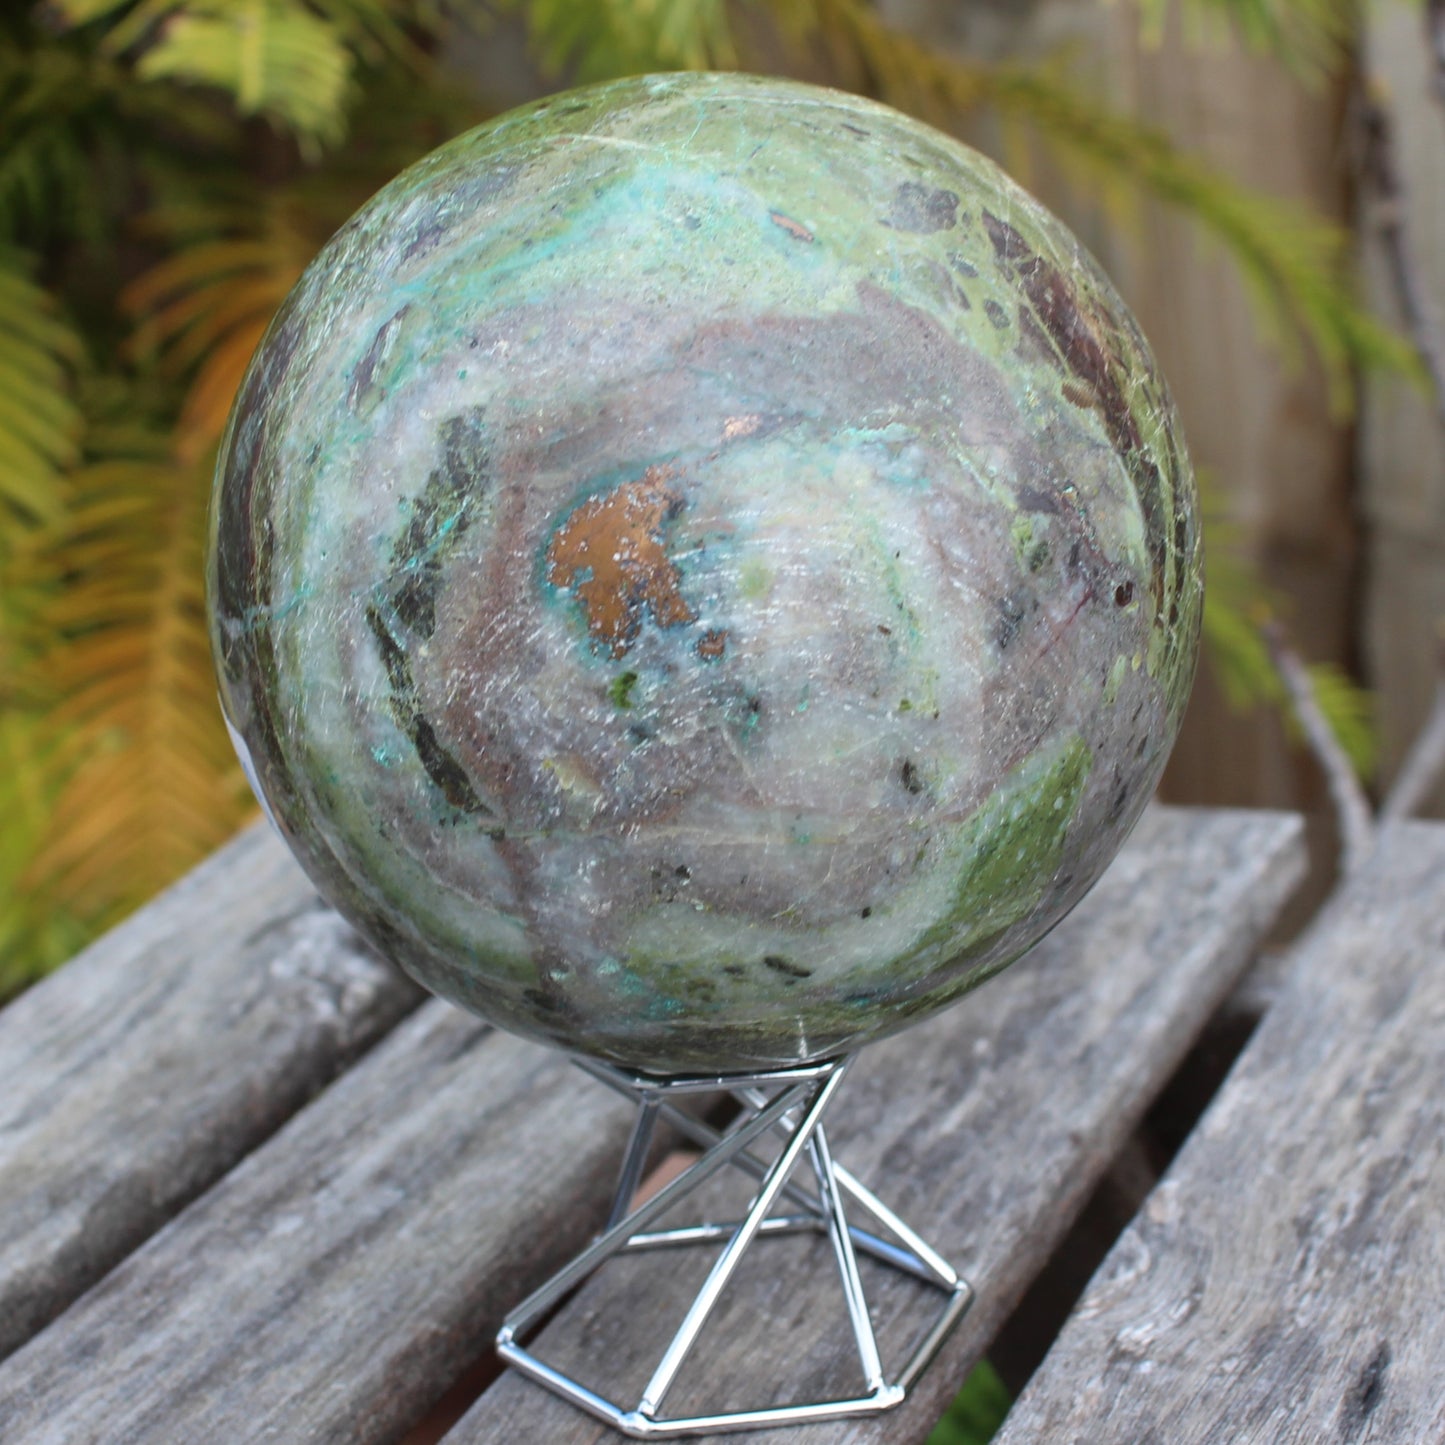 Phoenix stone sphere 2430g